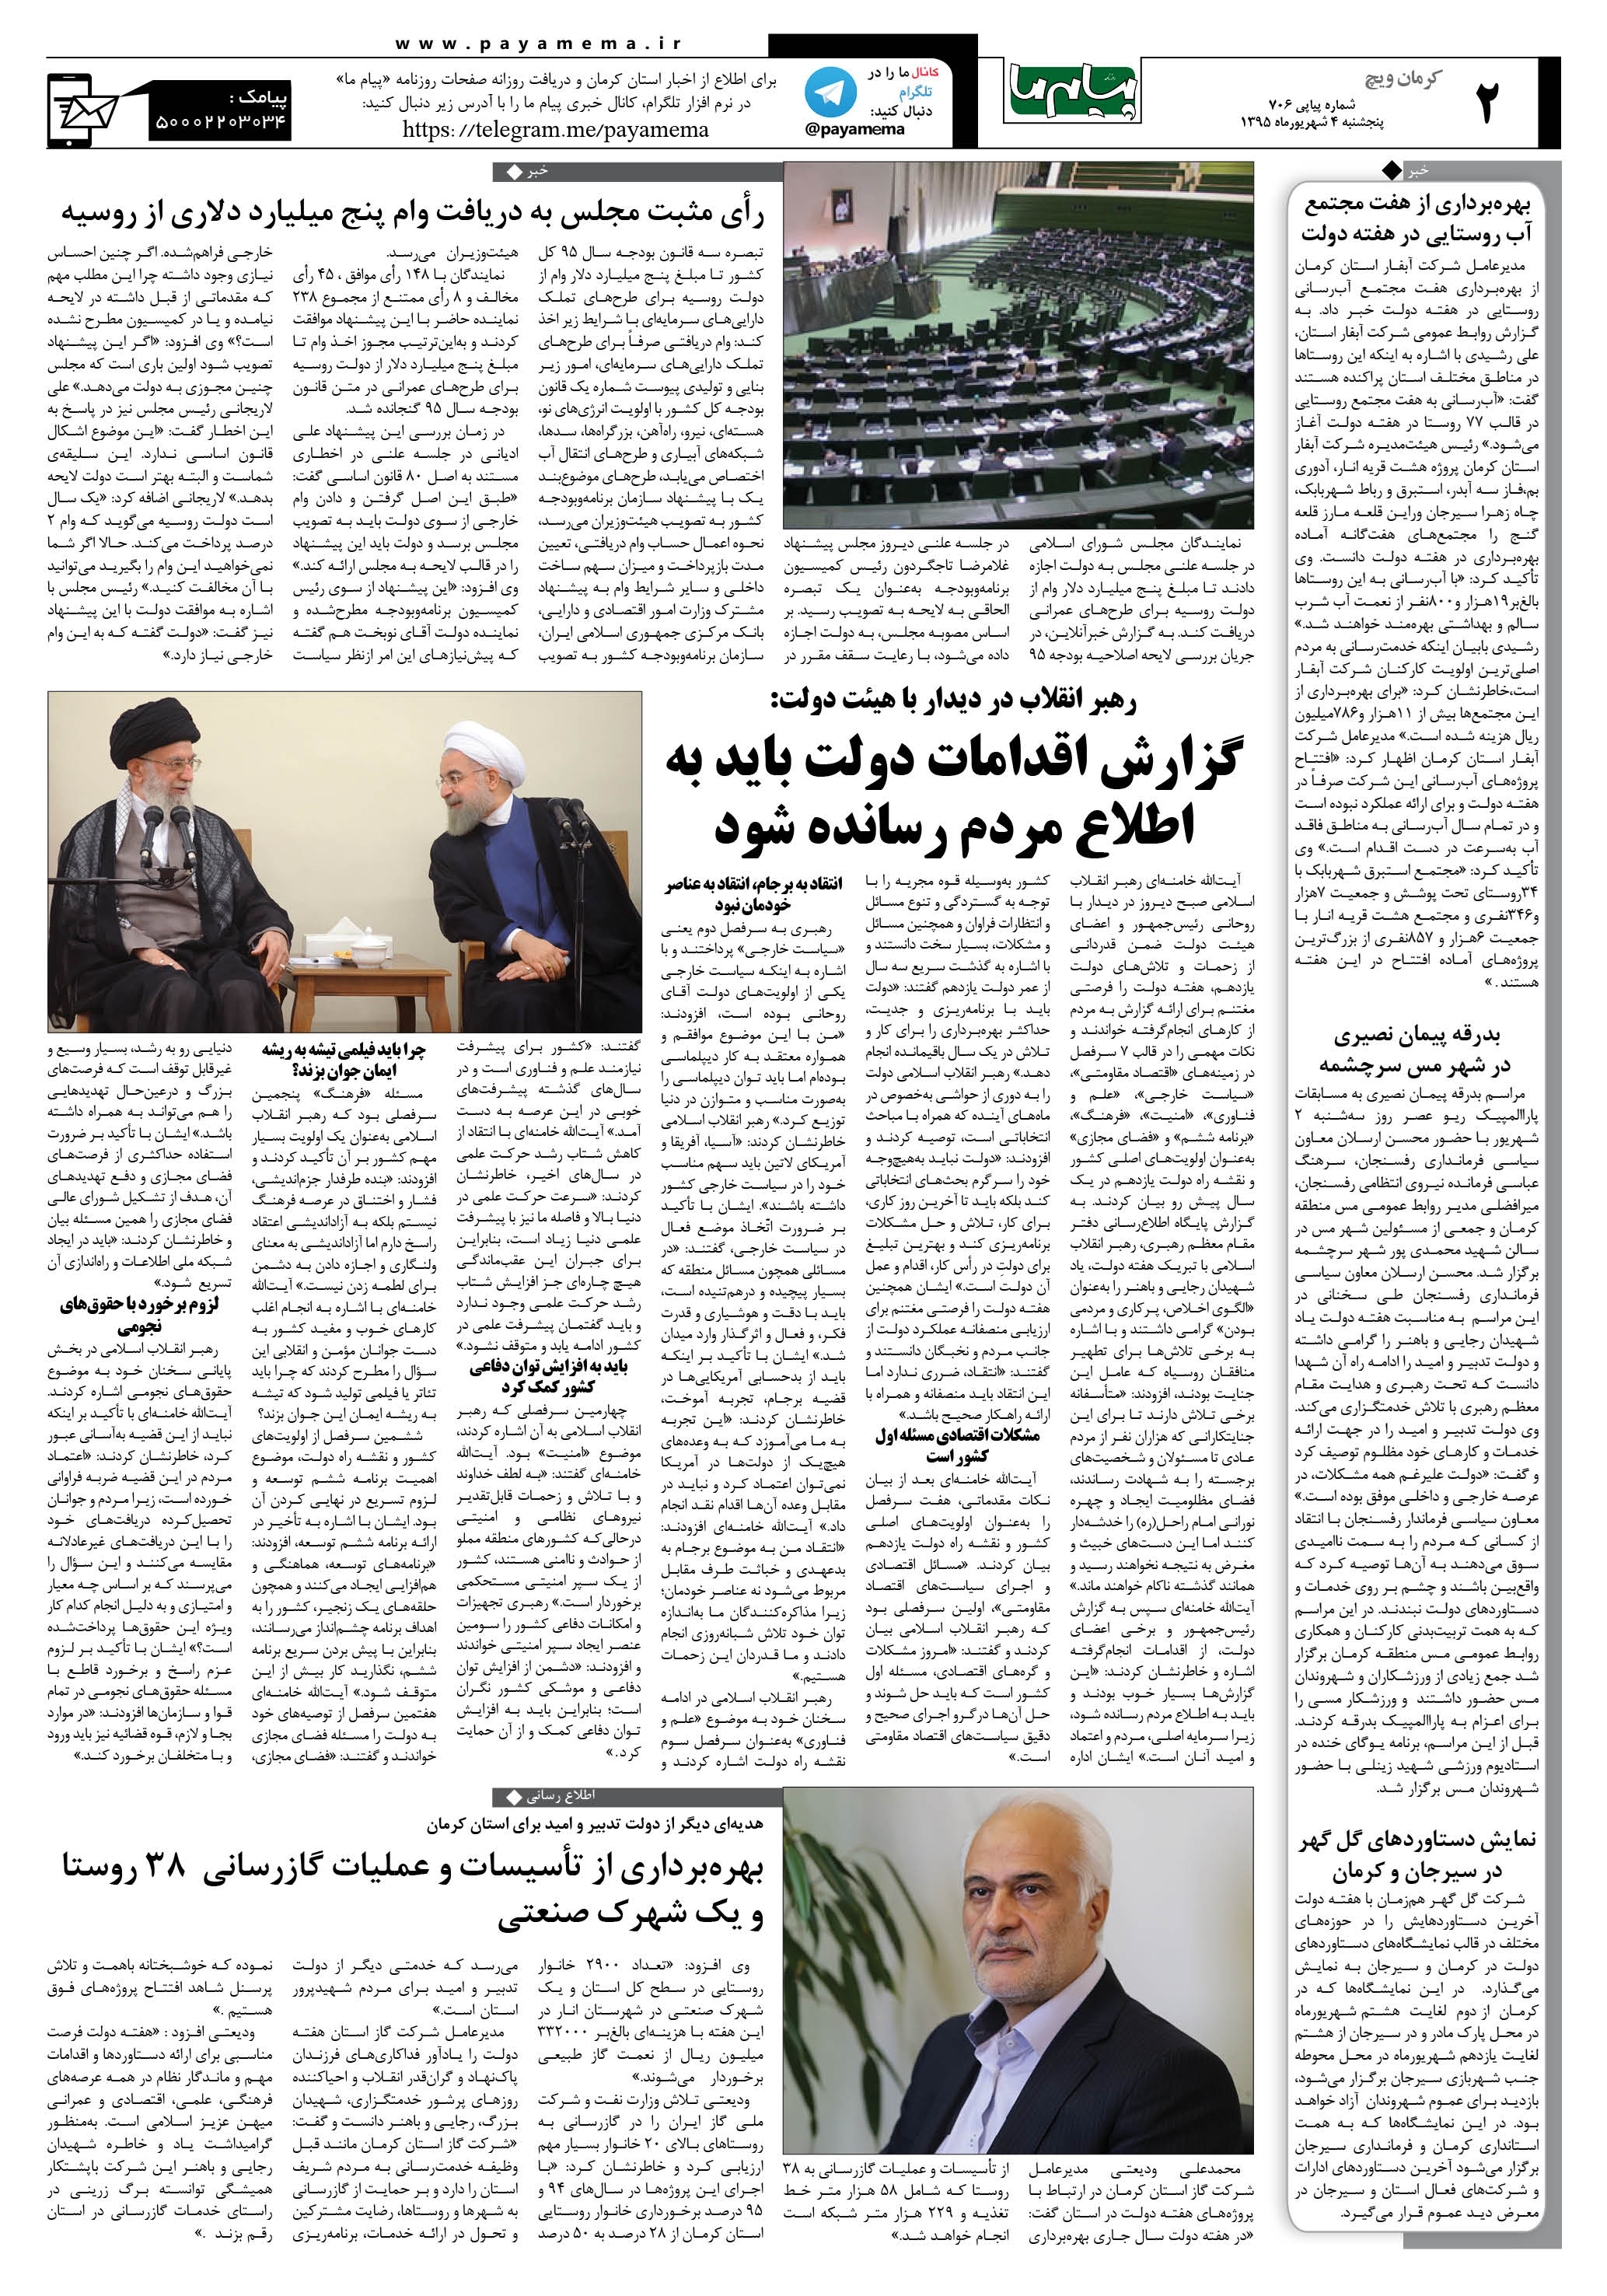 صفحه کرمان ویج شماره 706 روزنامه پیام ما